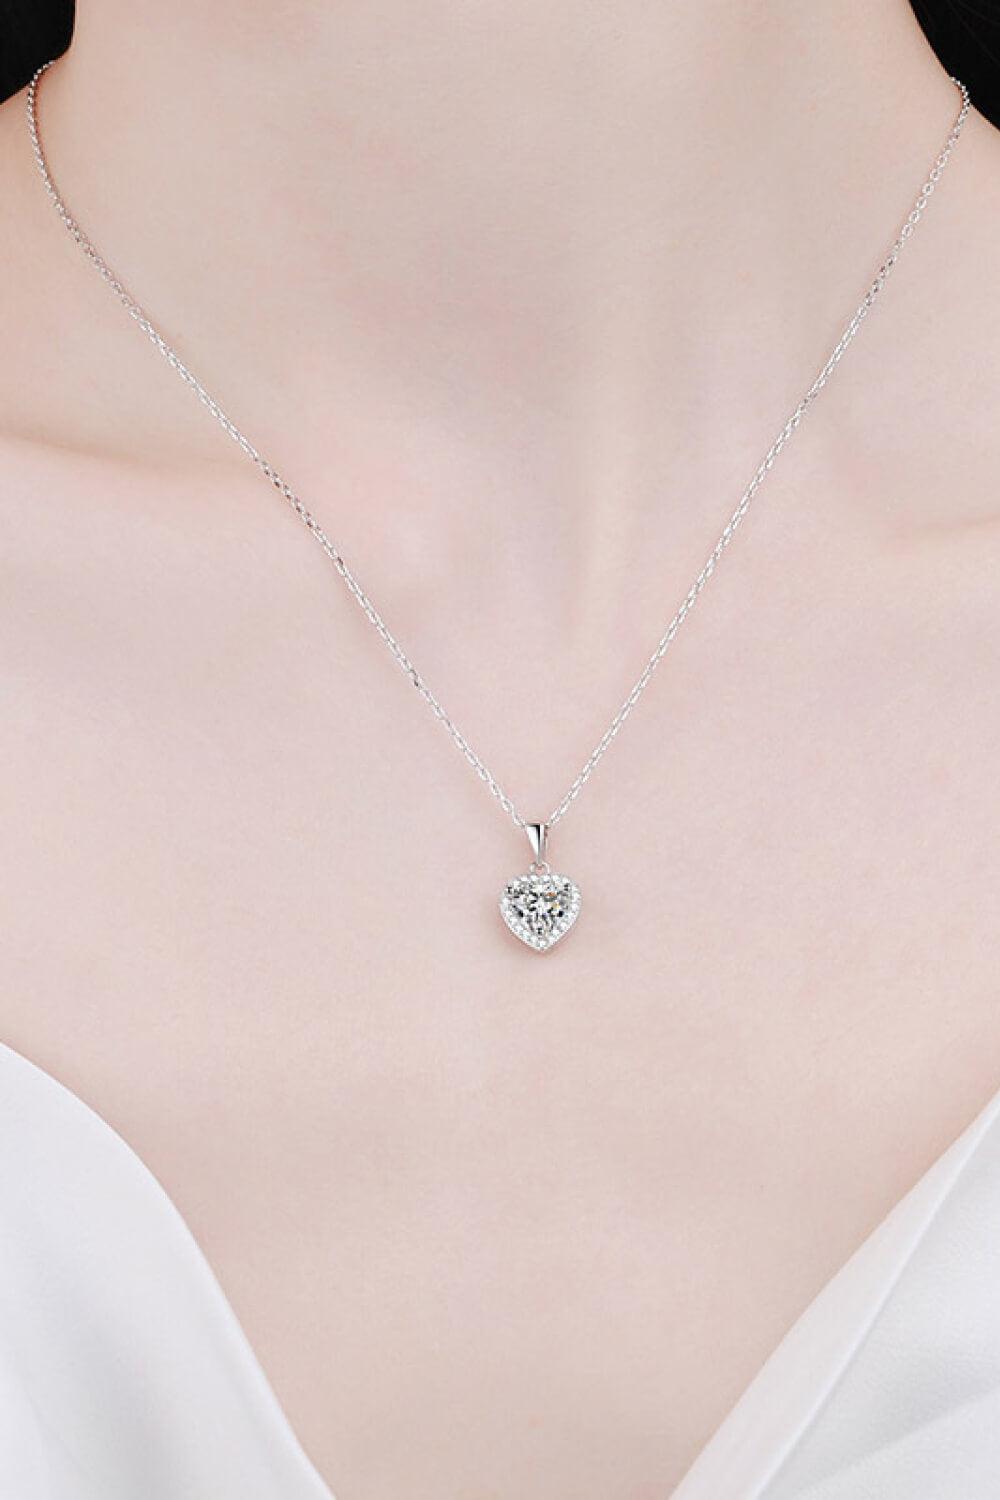 1 Carat Moissanite Heart Pendant Chain Necklace BLUE ZONE PLANET